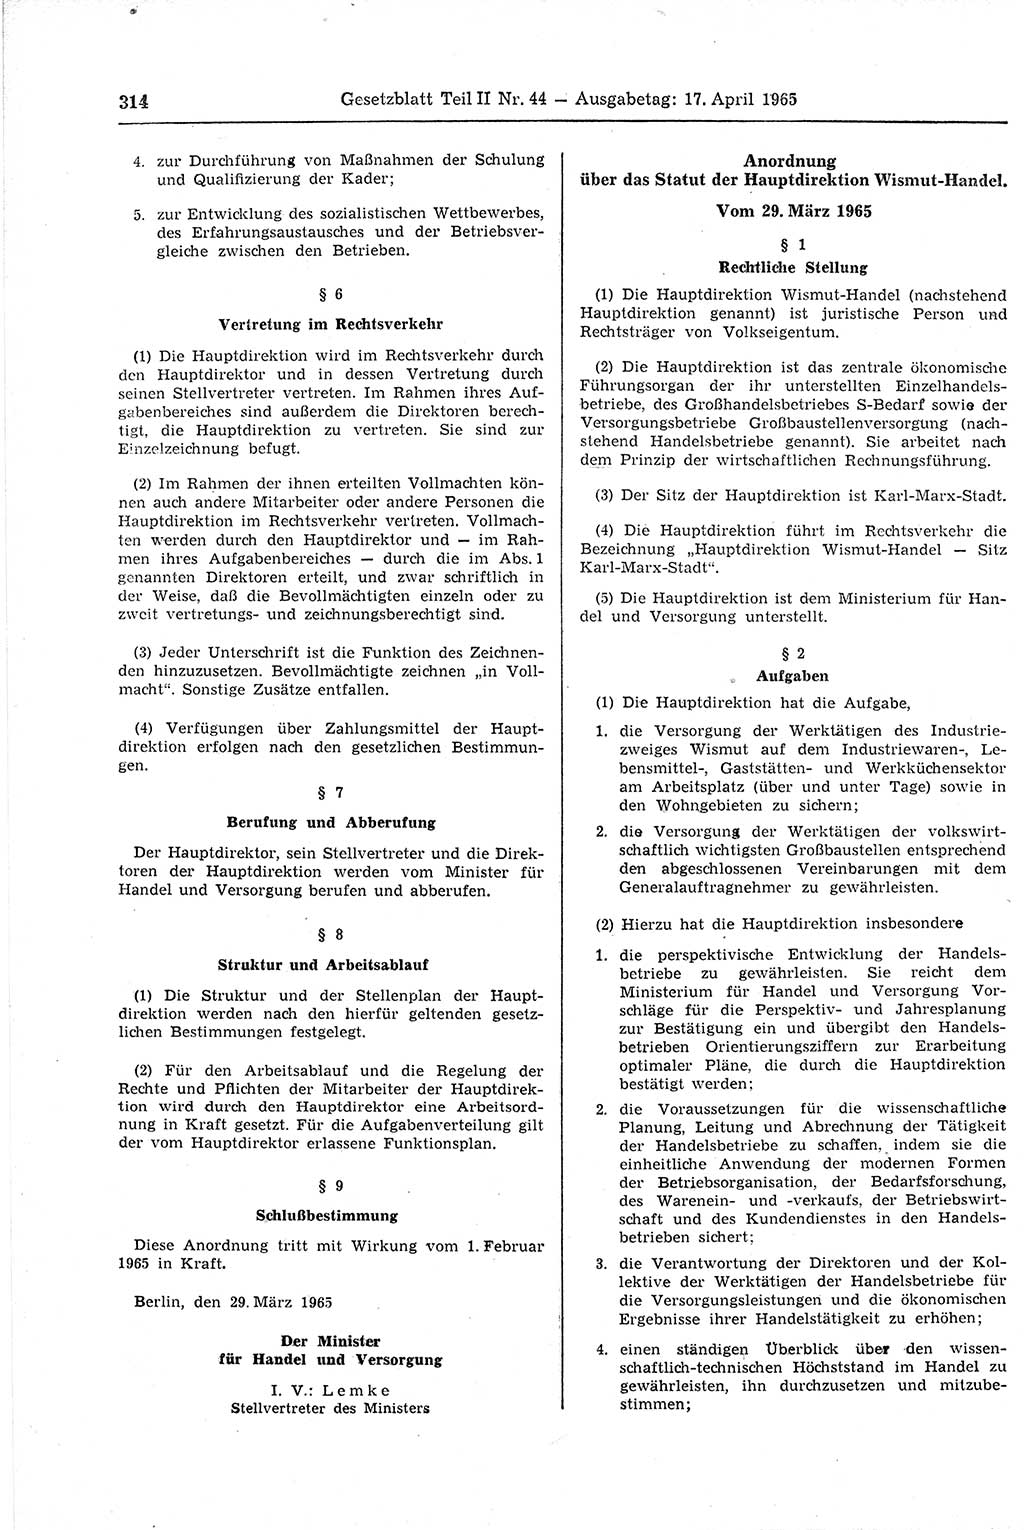 Gesetzblatt (GBl.) der Deutschen Demokratischen Republik (DDR) Teil ⅠⅠ 1965, Seite 314 (GBl. DDR ⅠⅠ 1965, S. 314)